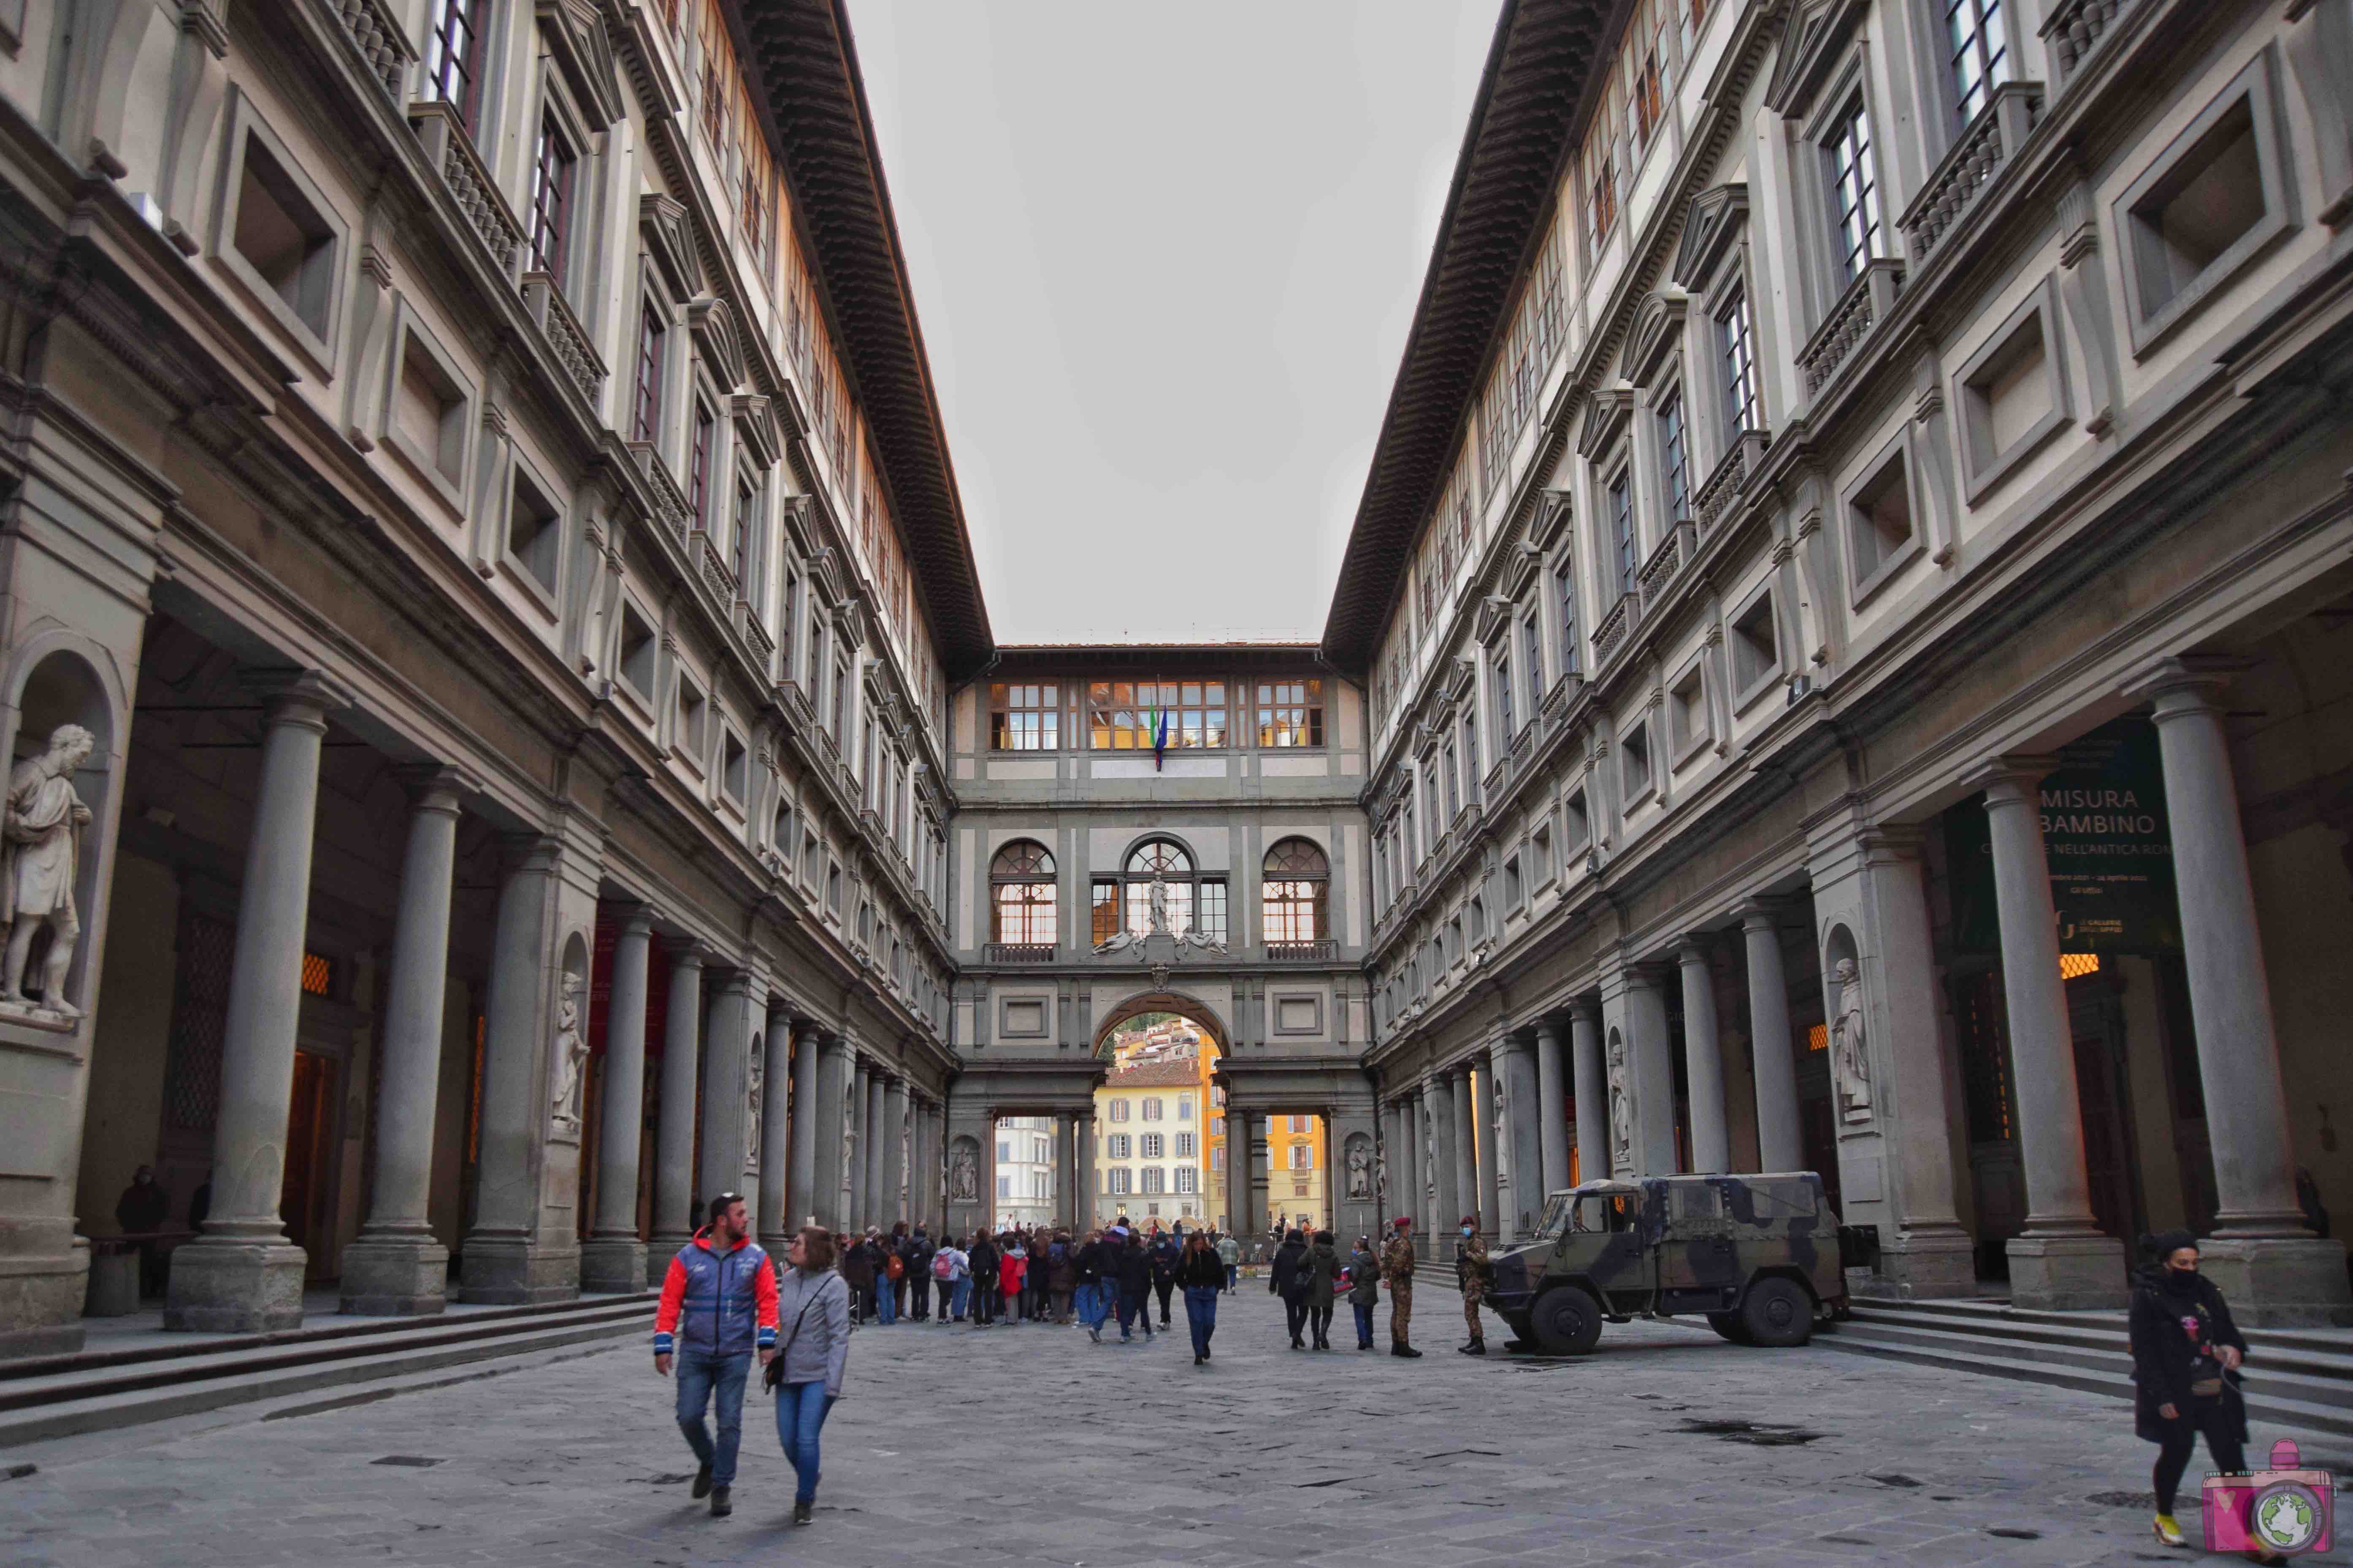 Gallerie degli Uffizi Firenze